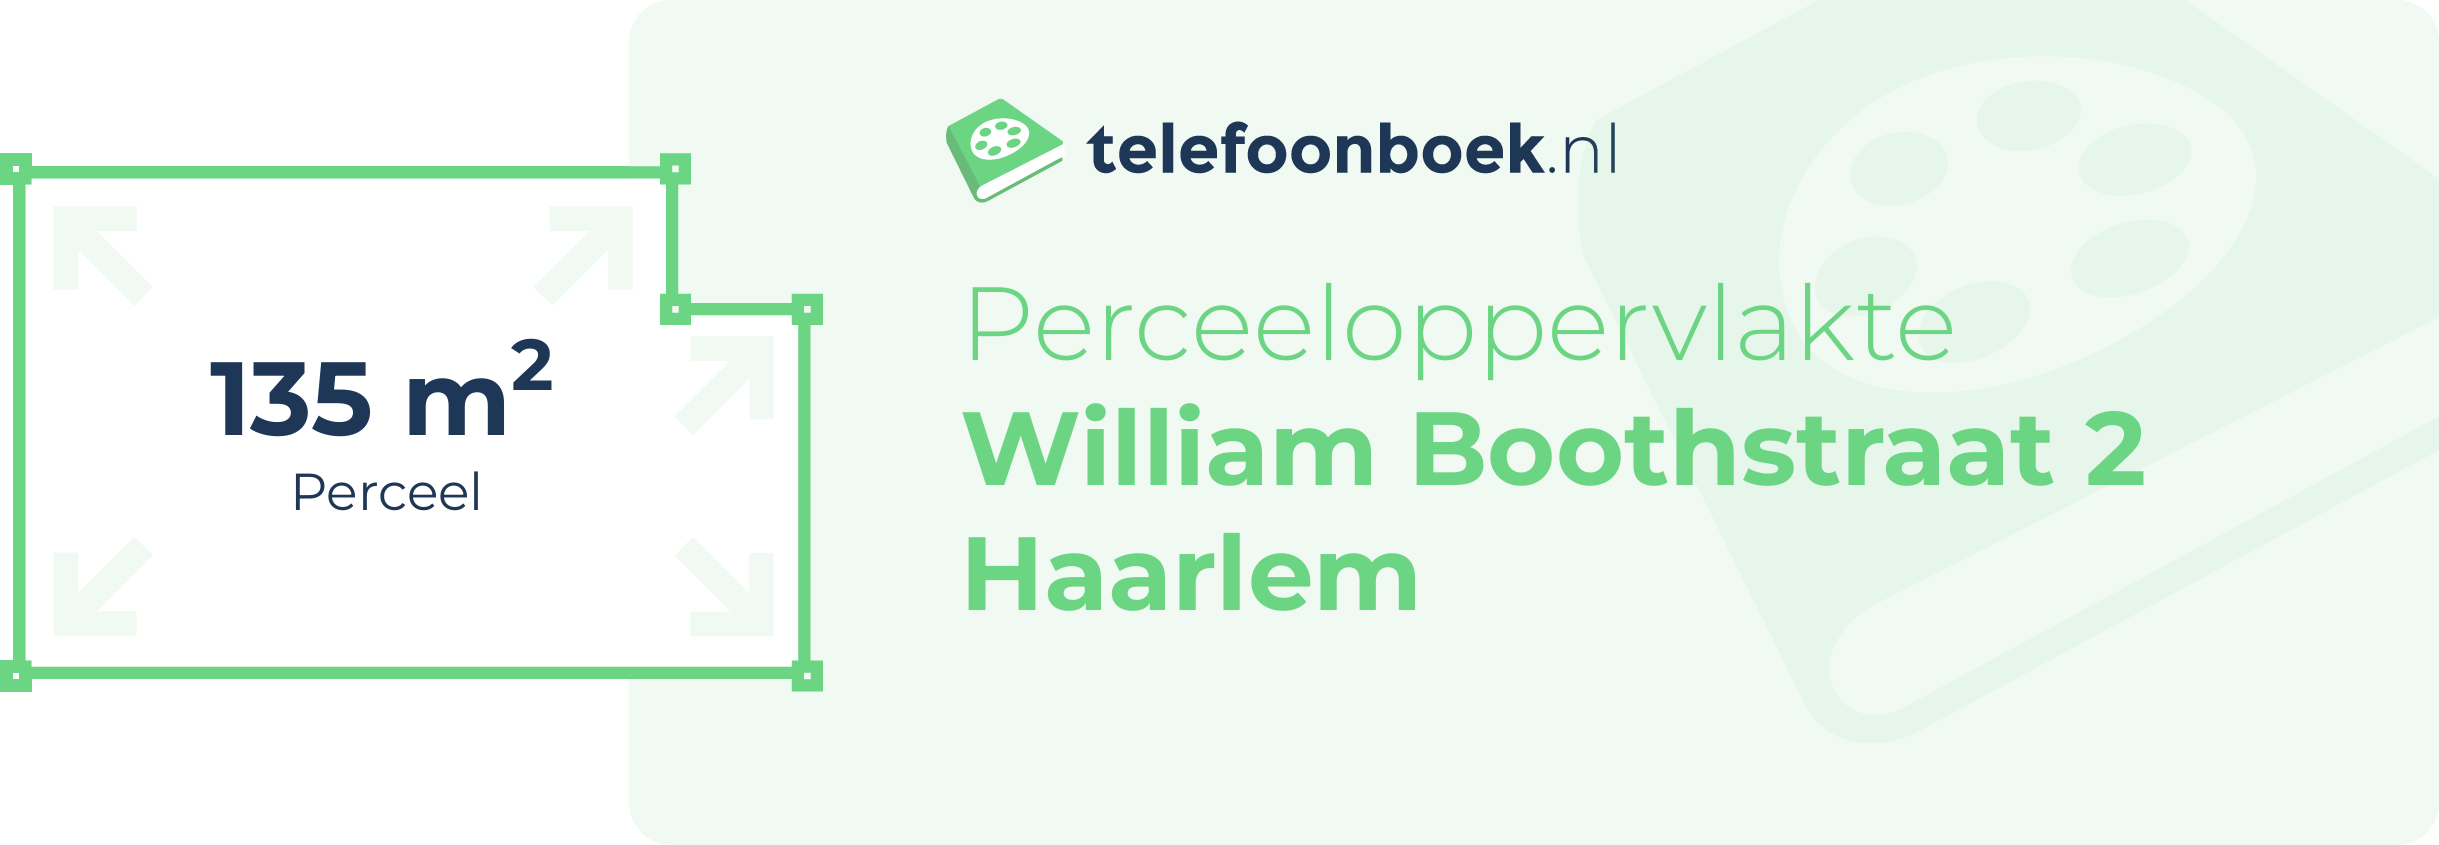 Perceeloppervlakte William Boothstraat 2 Haarlem